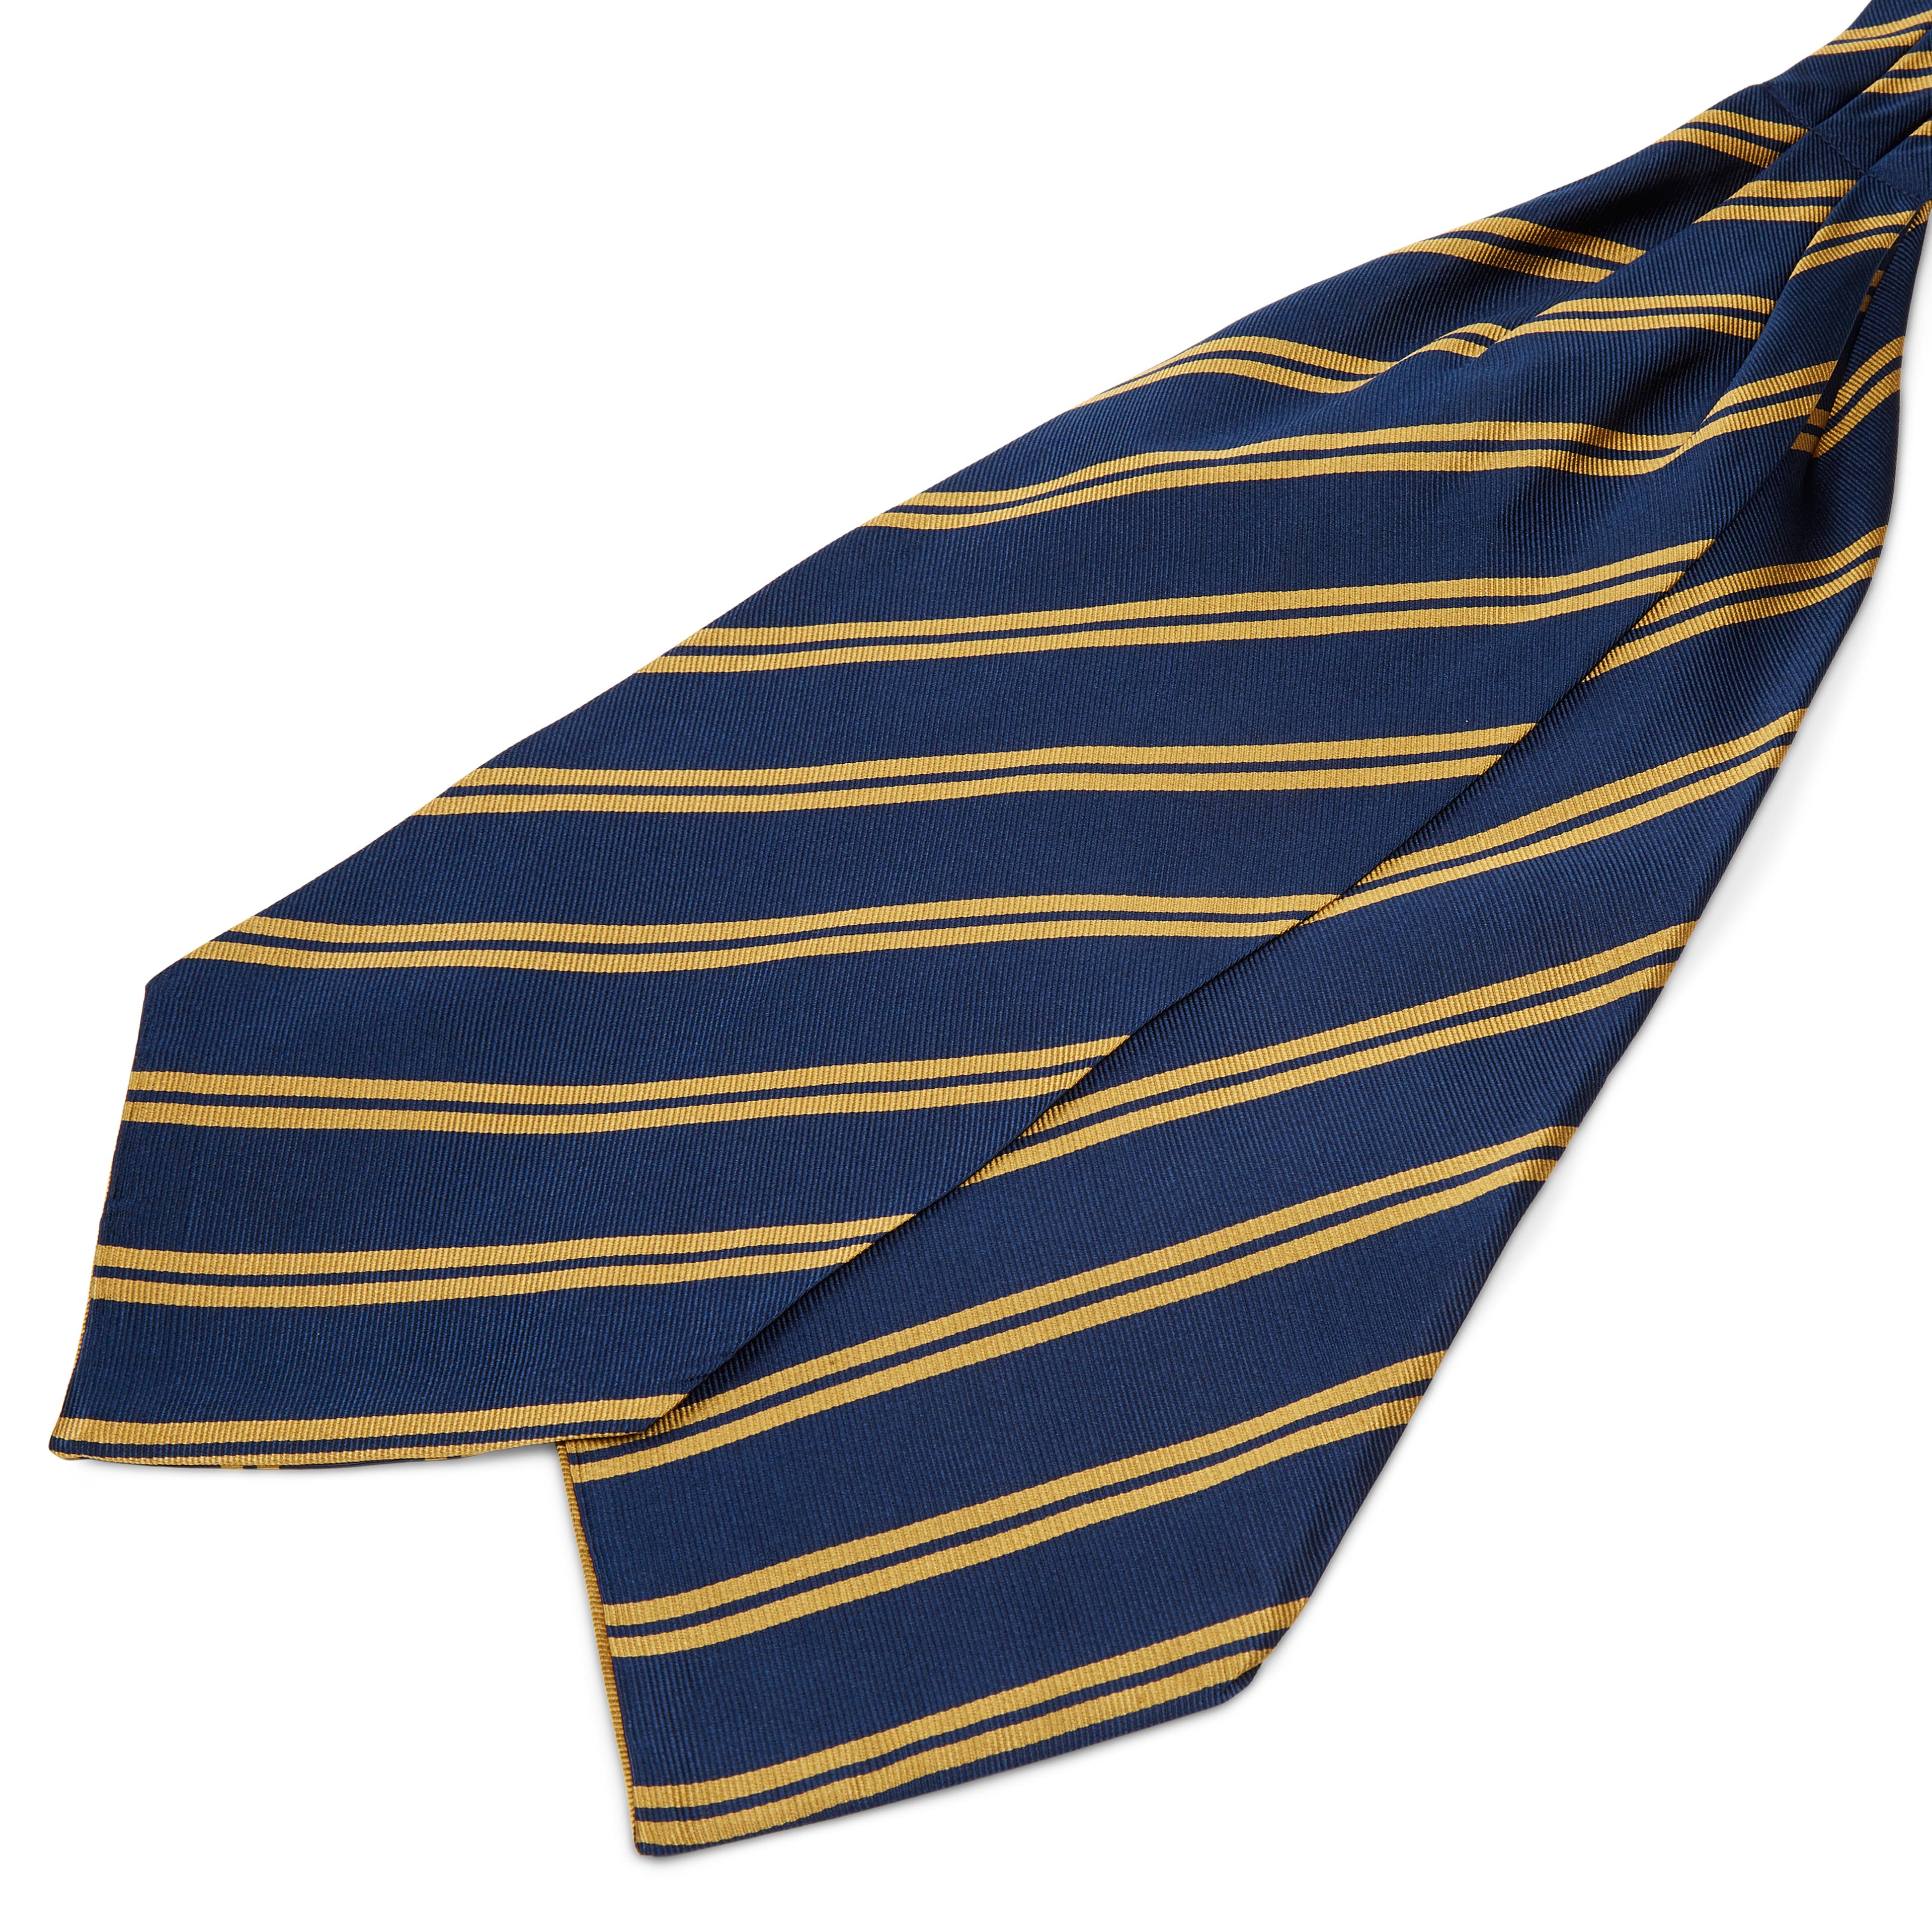 Cravatta ascot in seta blu navy con doppie righe dorate